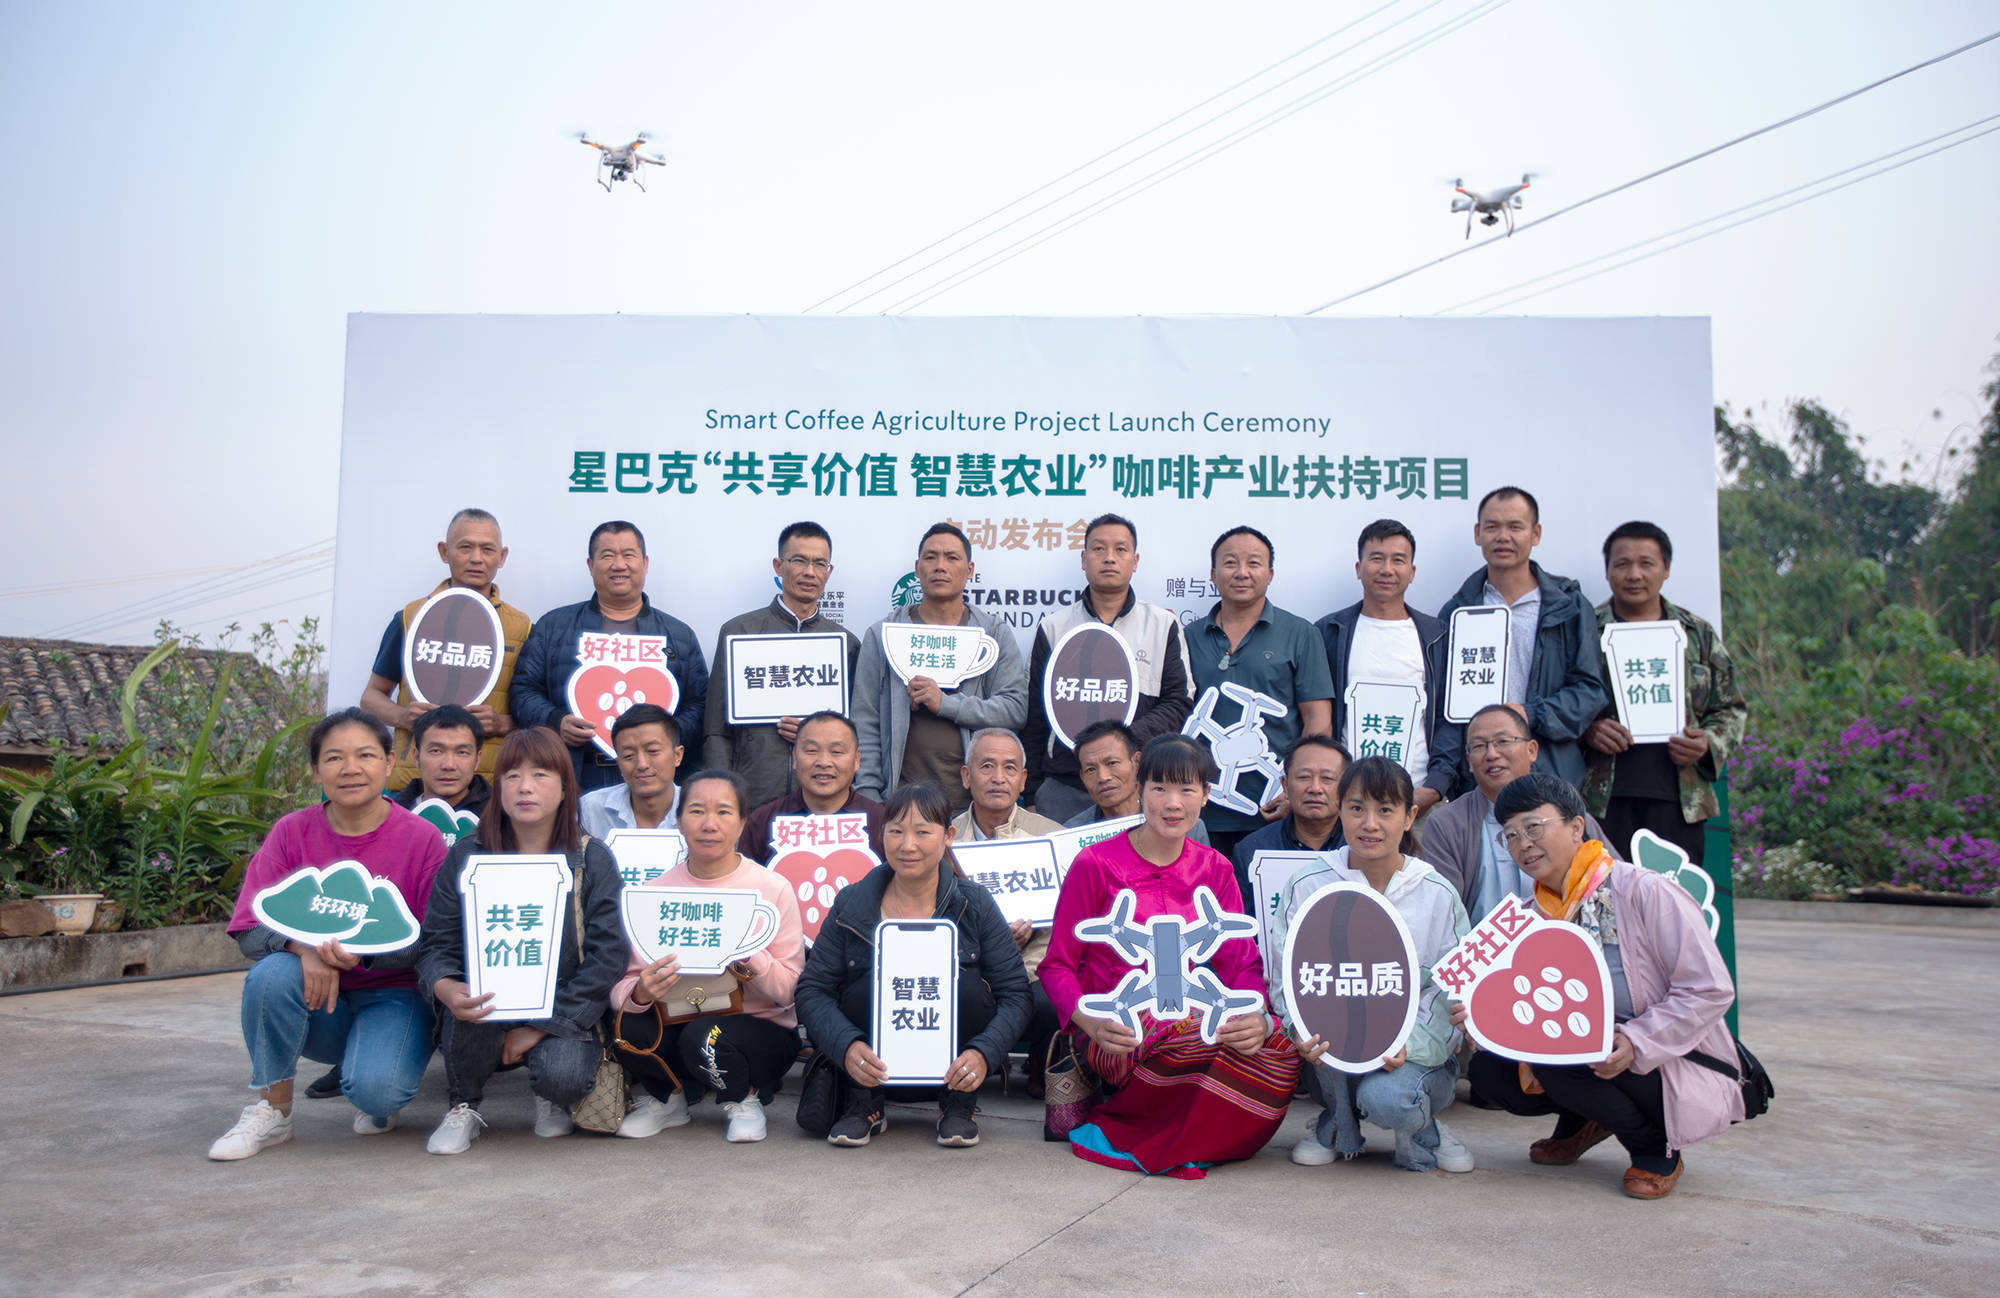 星巴克携手北京乐平公益基金会启动云南咖啡产业扶持三期项目